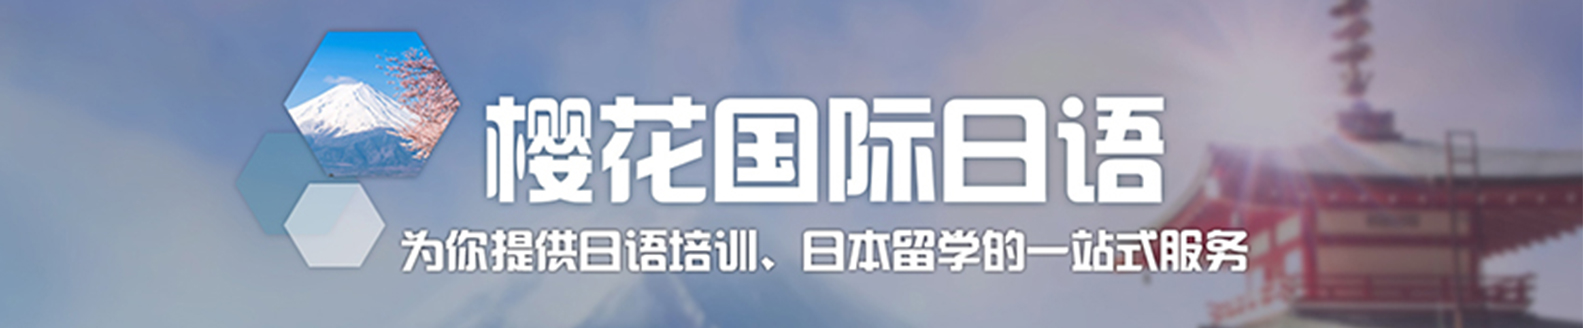 樱花国际日语banner